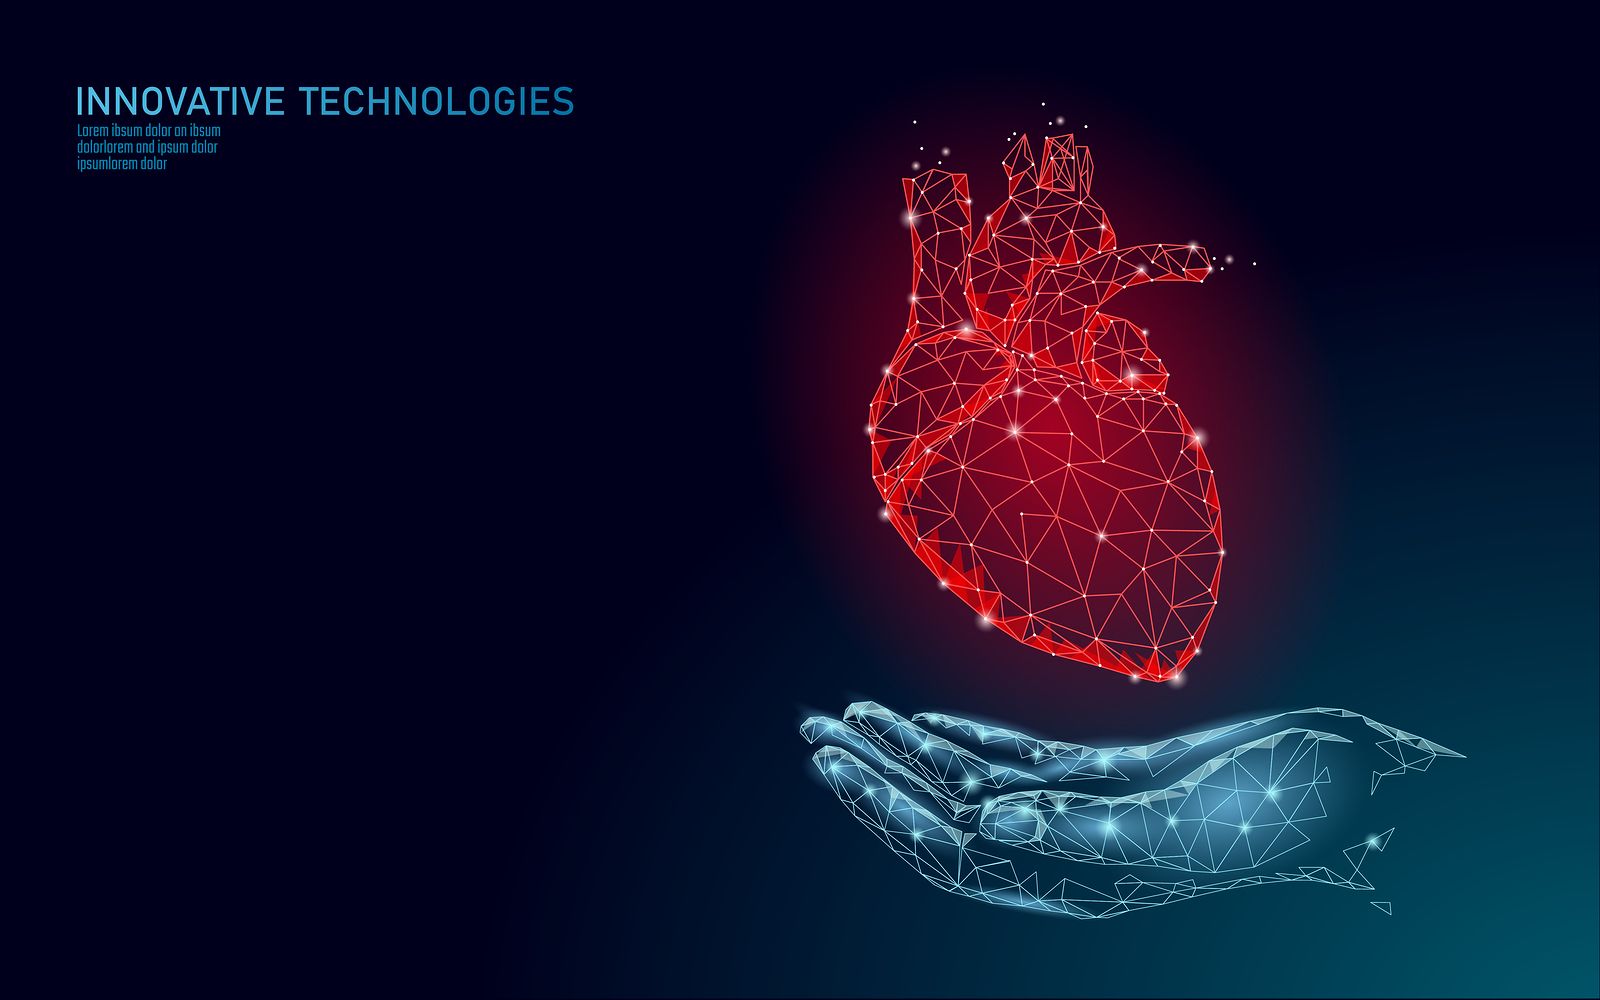 Implantan en España un sensor para monitorizar el corazón